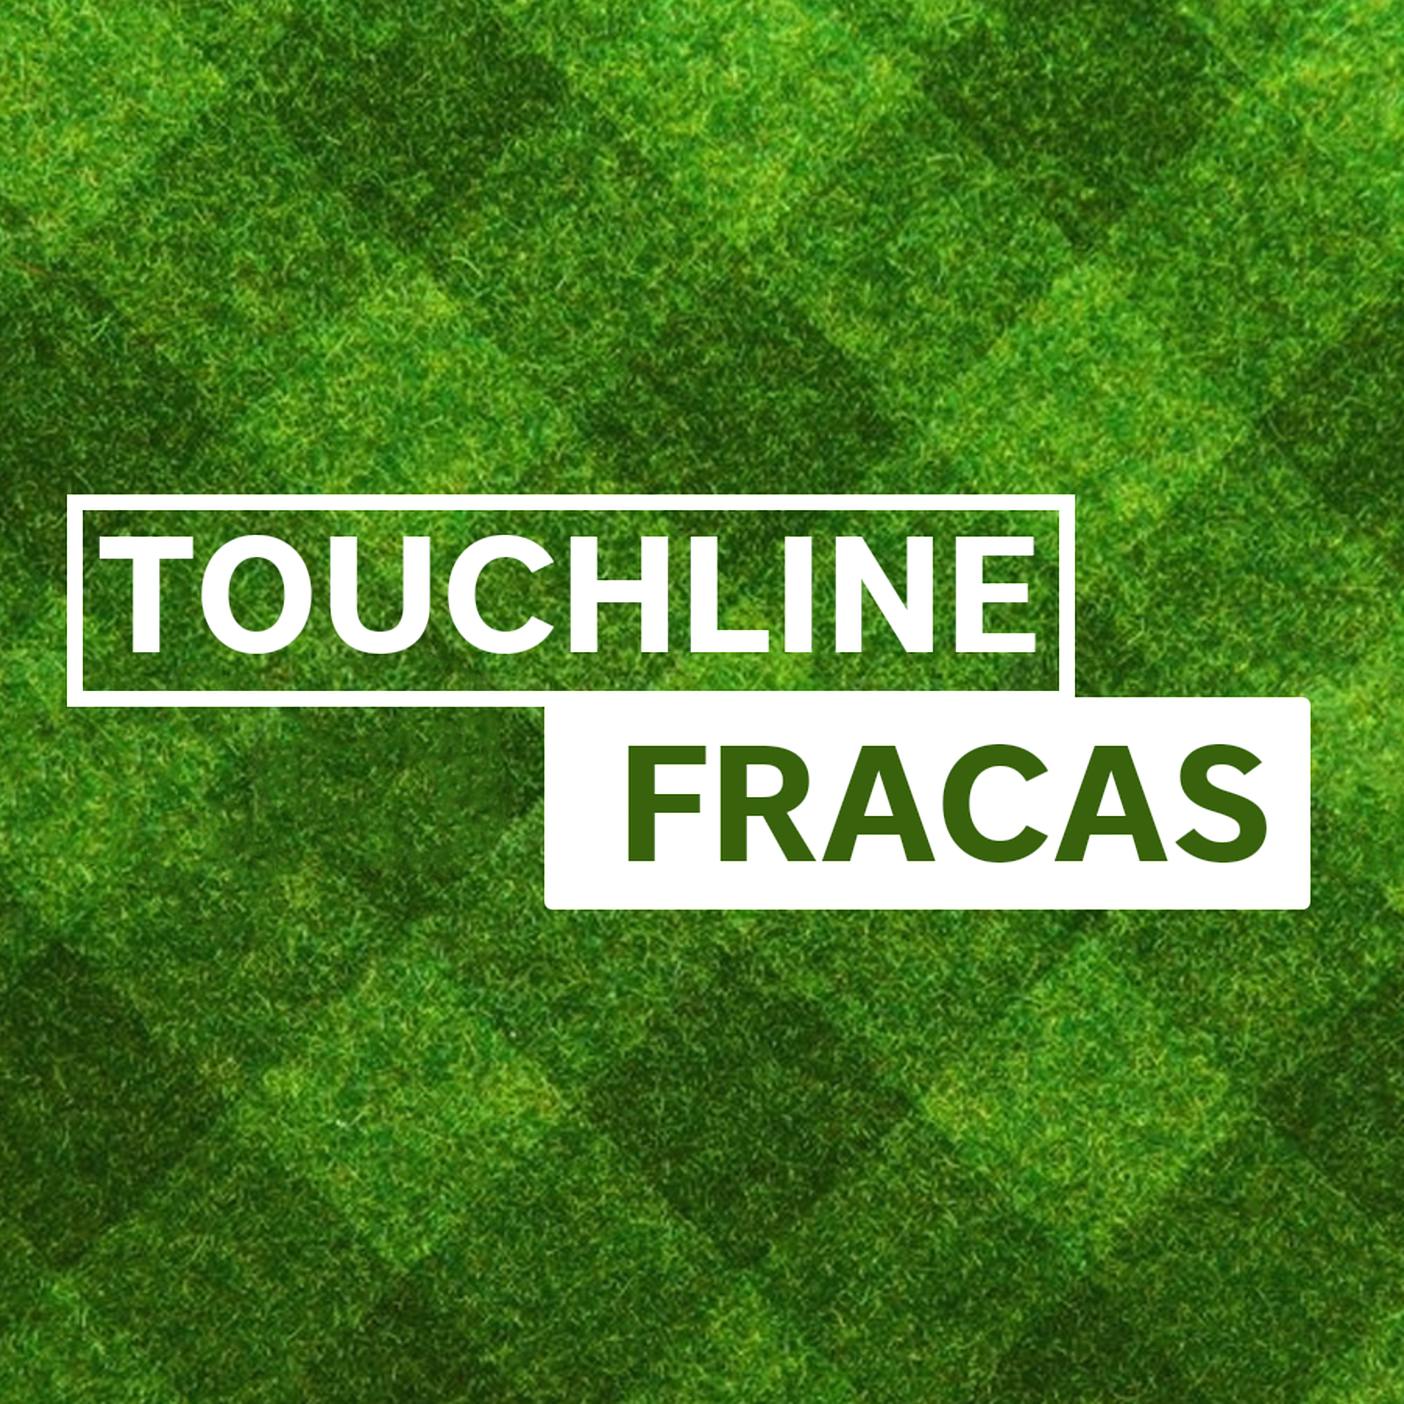 Touchline Fracas - Shy Havertz